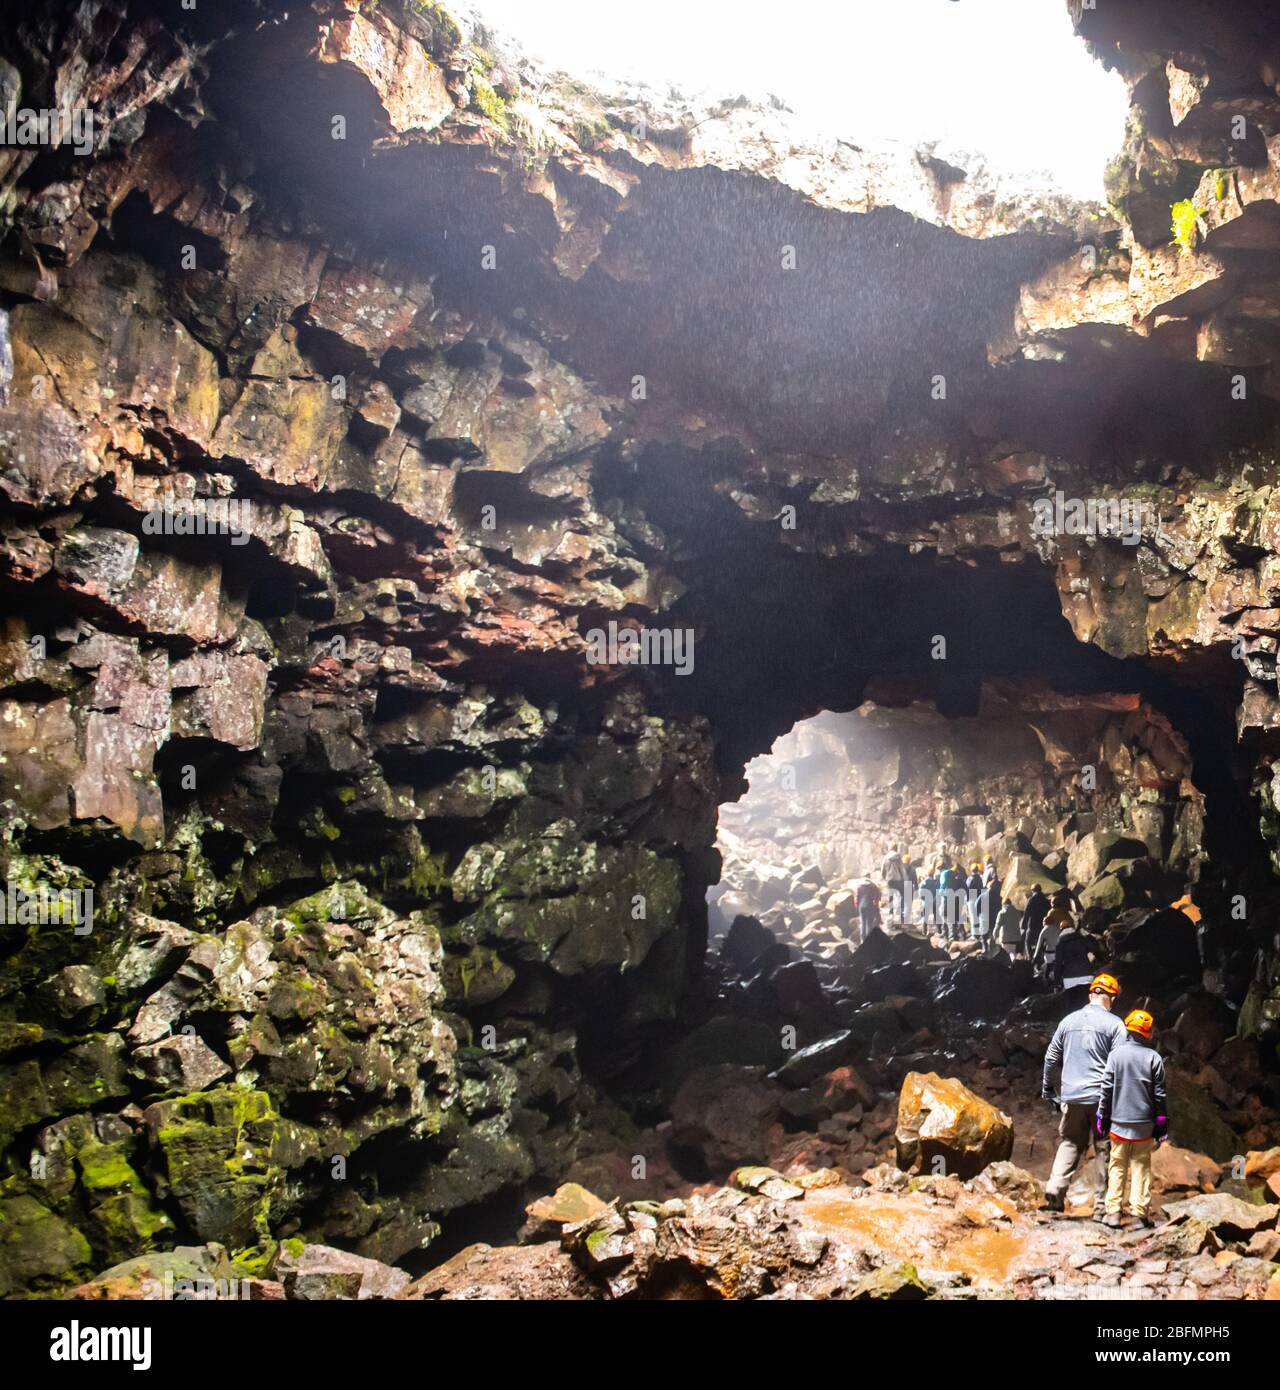 Le vieux tunnel de Lava islandais est une attraction touristique Banque D'Images